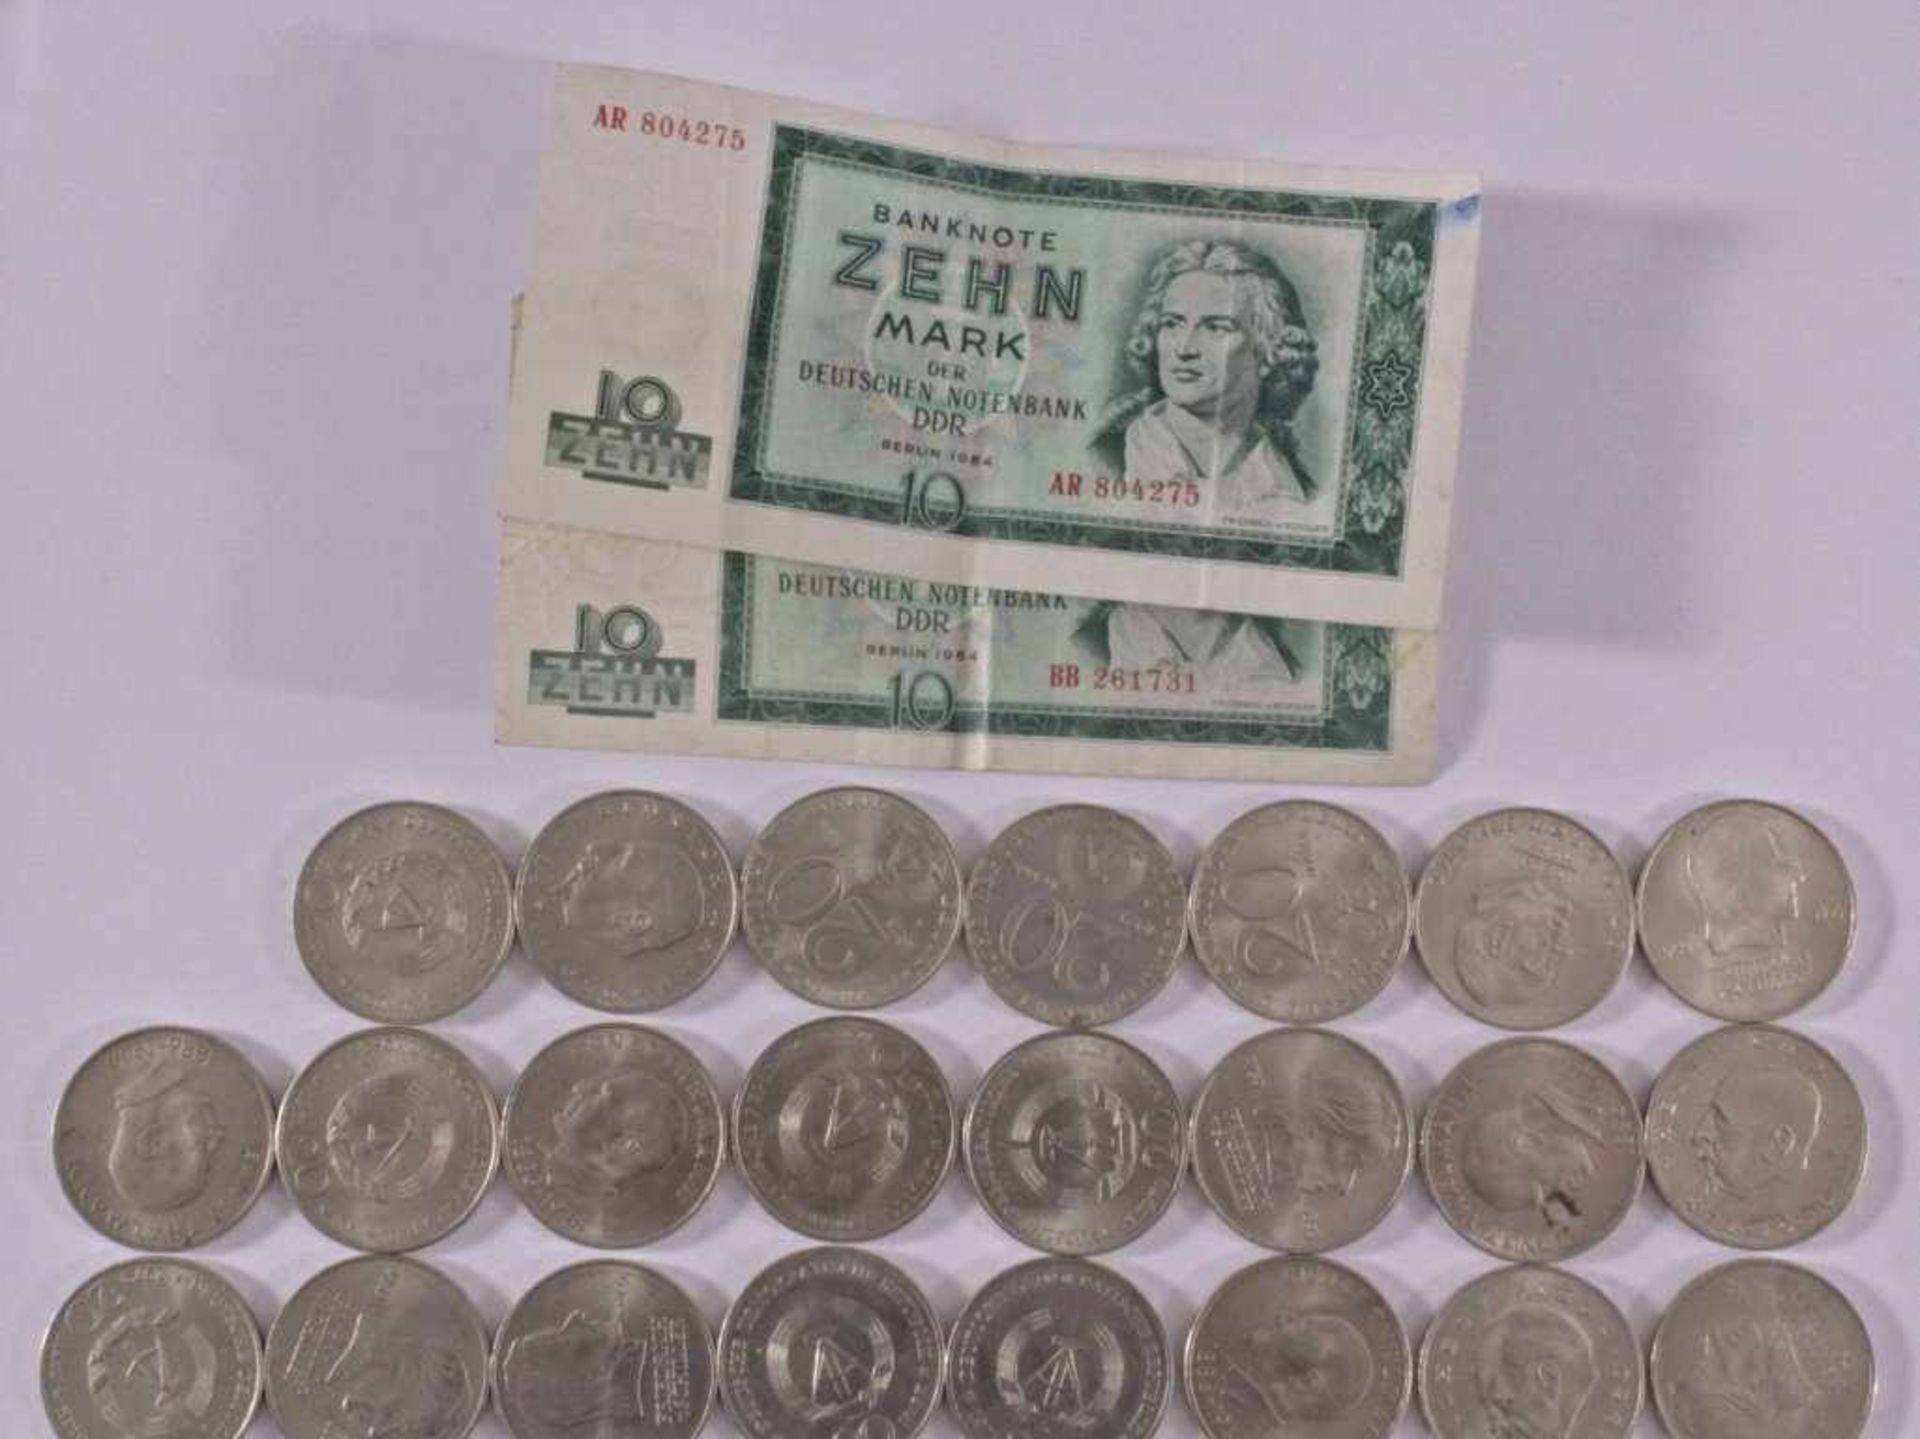 Münzen der DDRkleine Sammlung 5 Mark, 10 Mark und 20 Mark Münzen der DDR.zwei 10 Mark Scheine.15x - Image 2 of 3